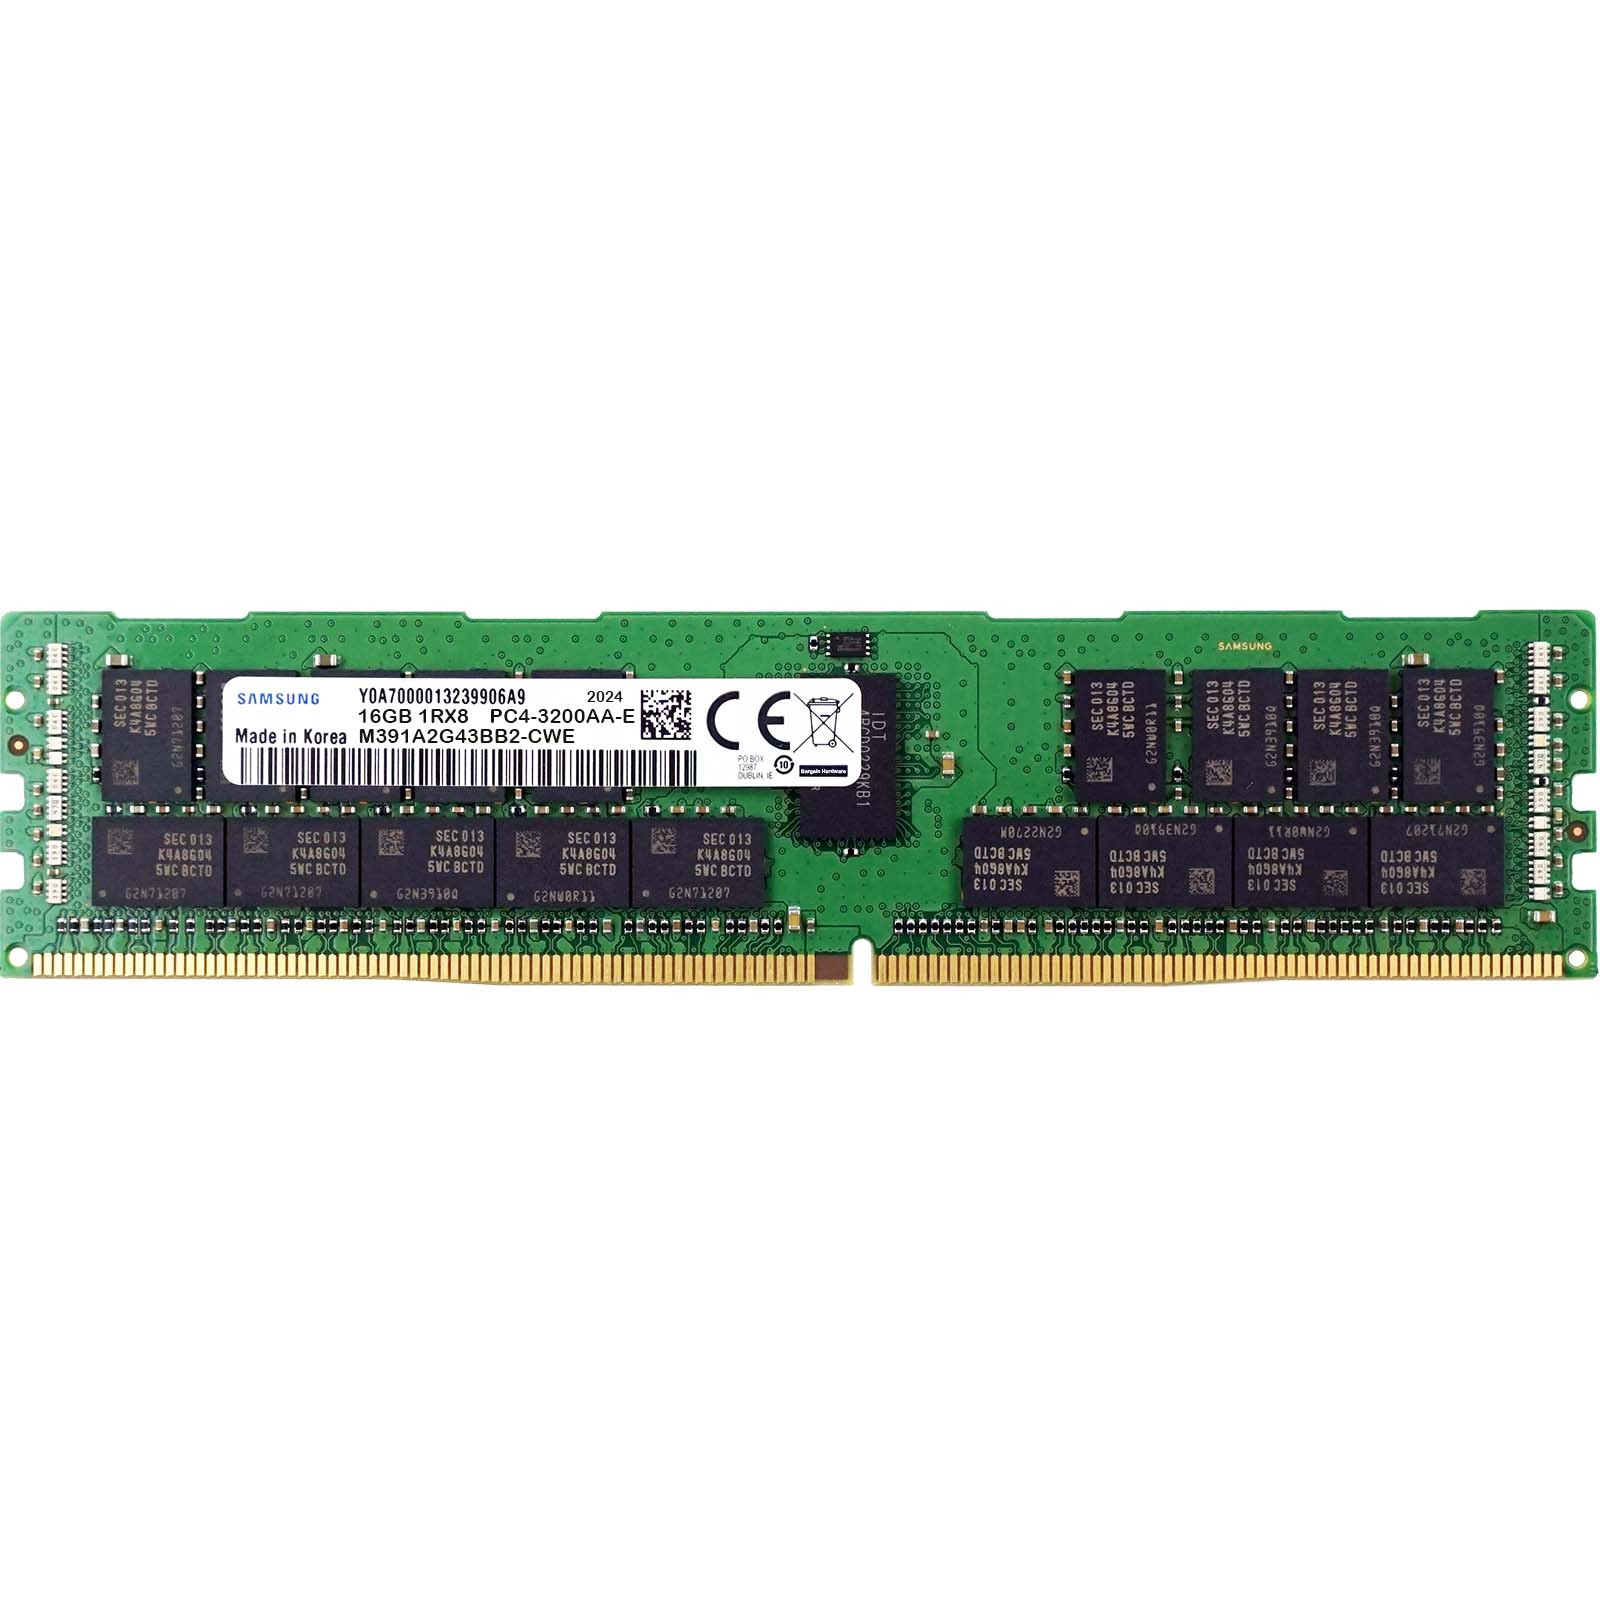 Samsung (M391A2G43BB2-CWE) - 16GB PC4-25600AA-E (1RX8, DDR4-3200MHz) RAM